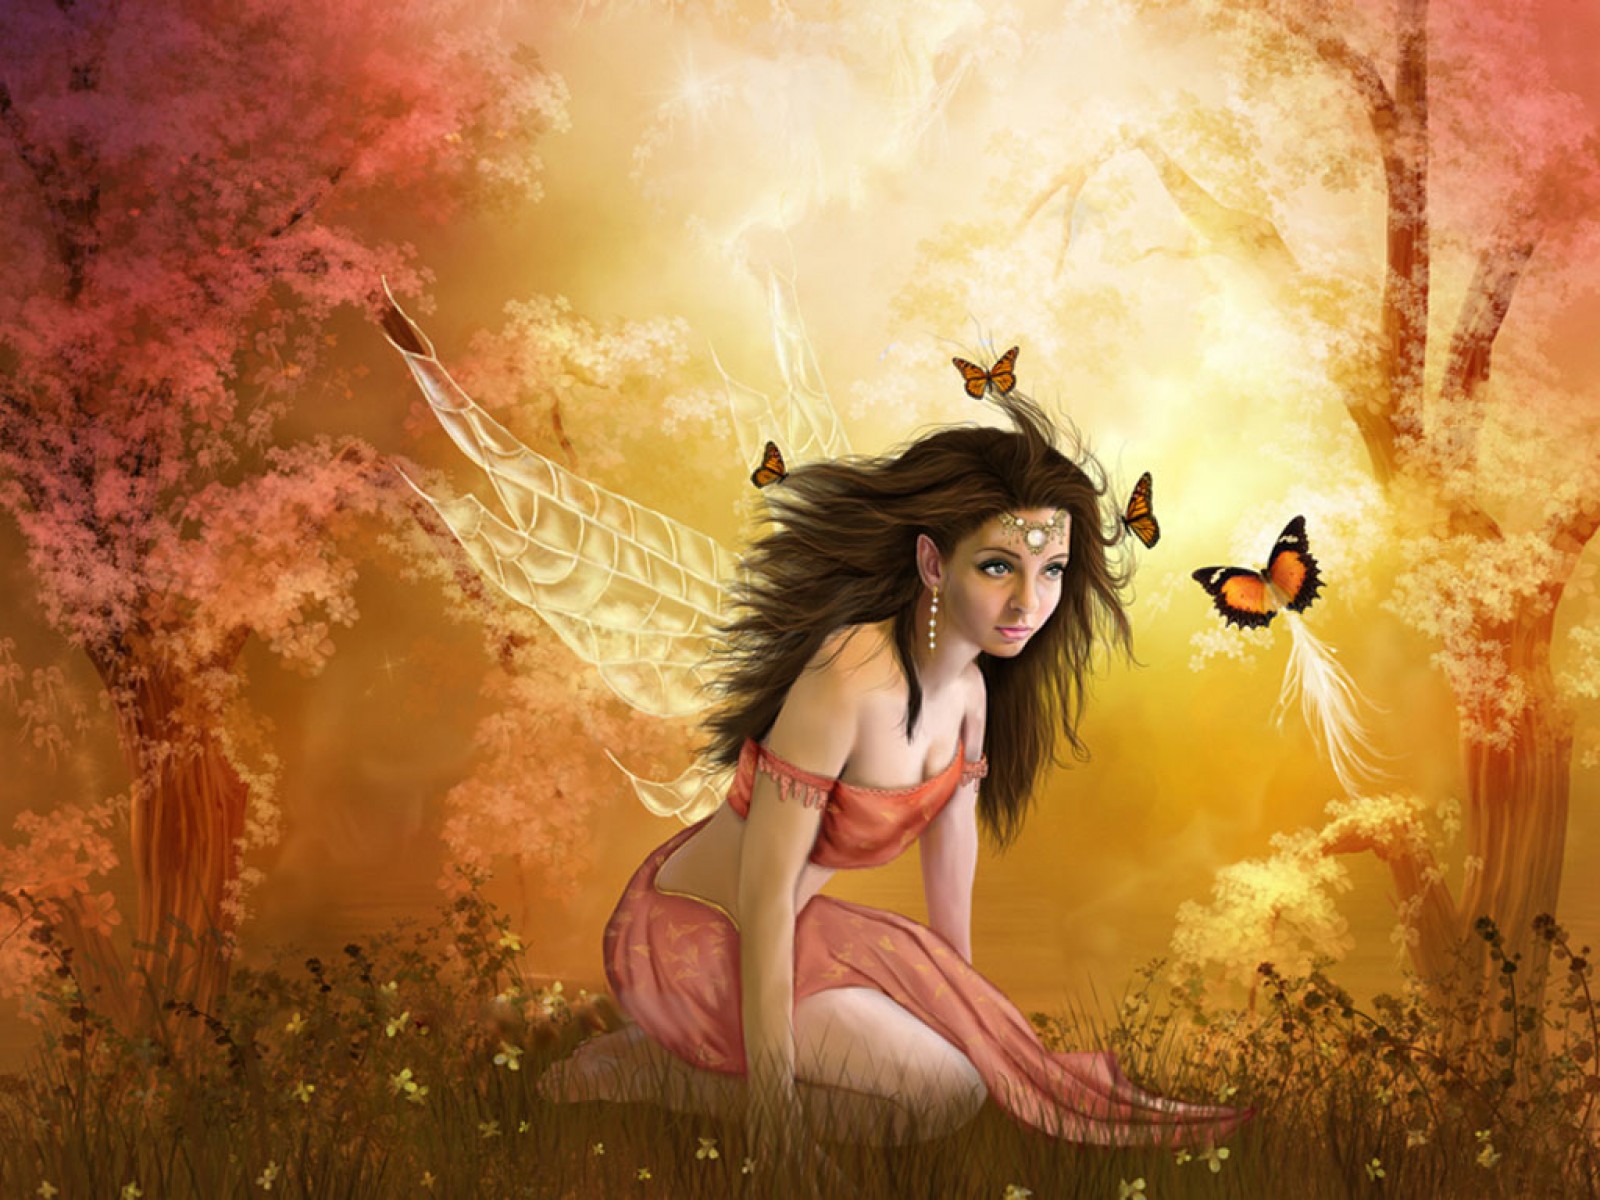 3d обои Фея сидит на лужайке и над ней кружатся бабочки...  бабочки # 20776